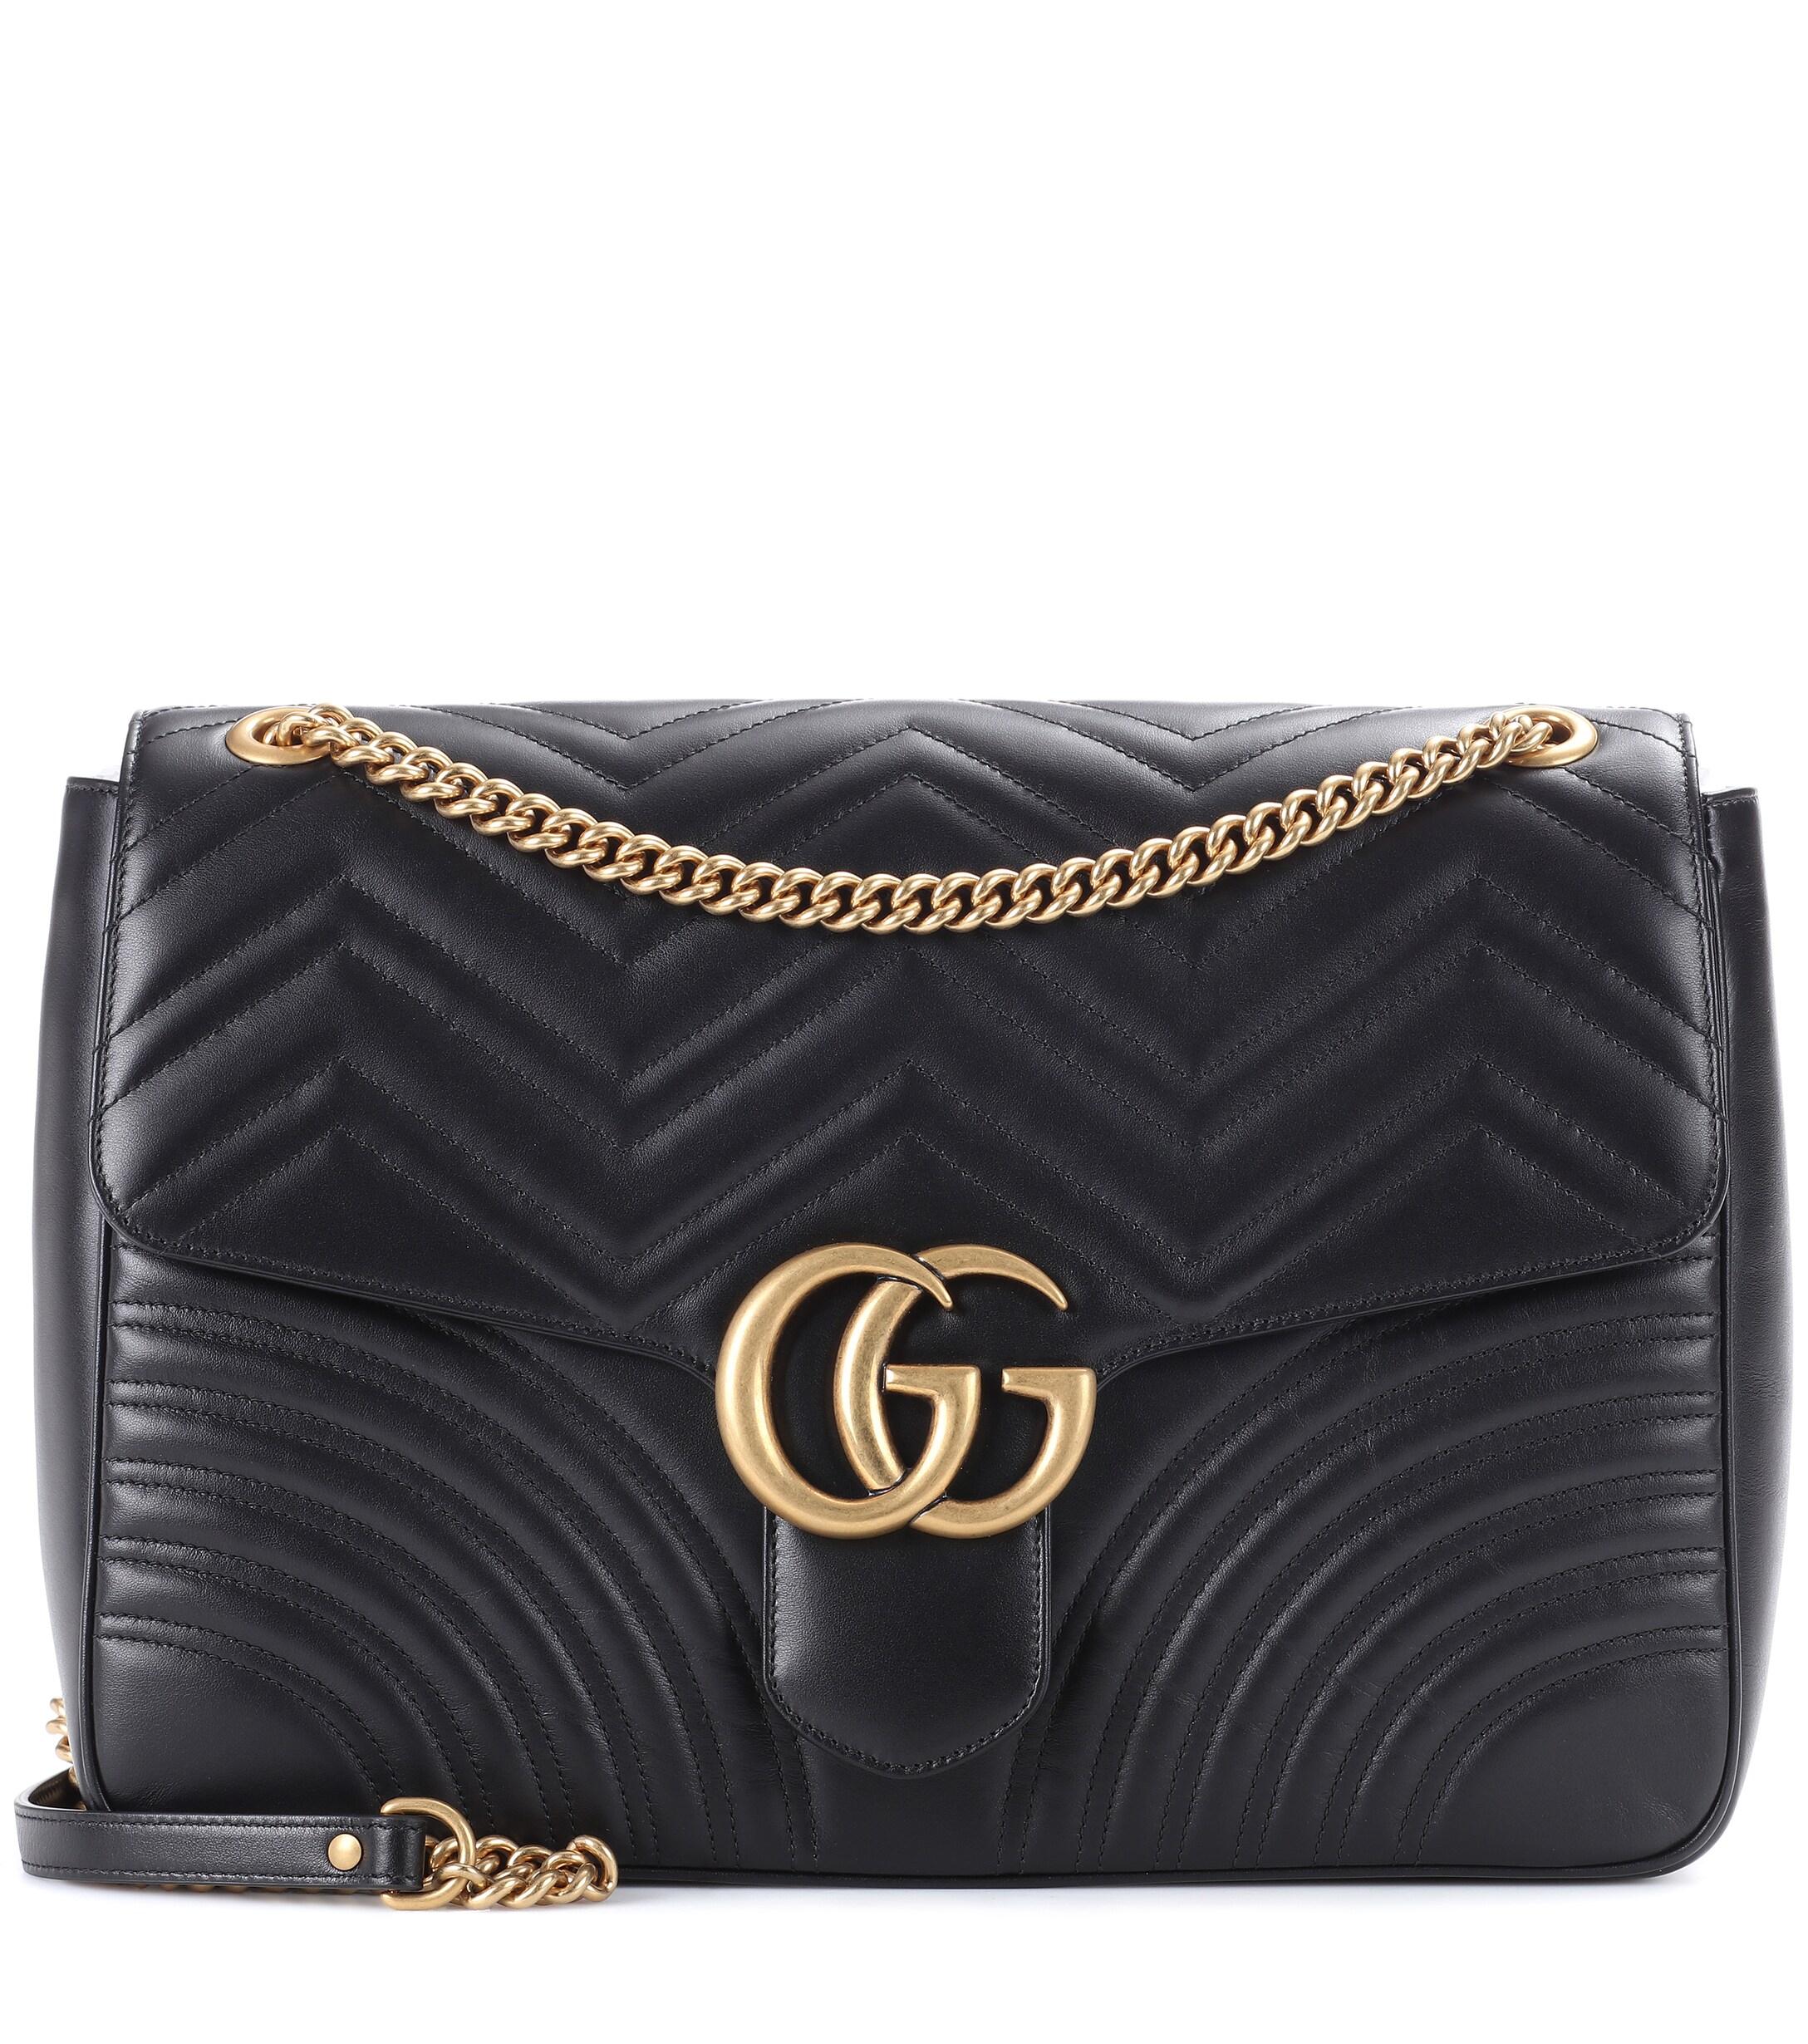 Gucci GG Marmont Large Shoulder Bag in Black - Lyst